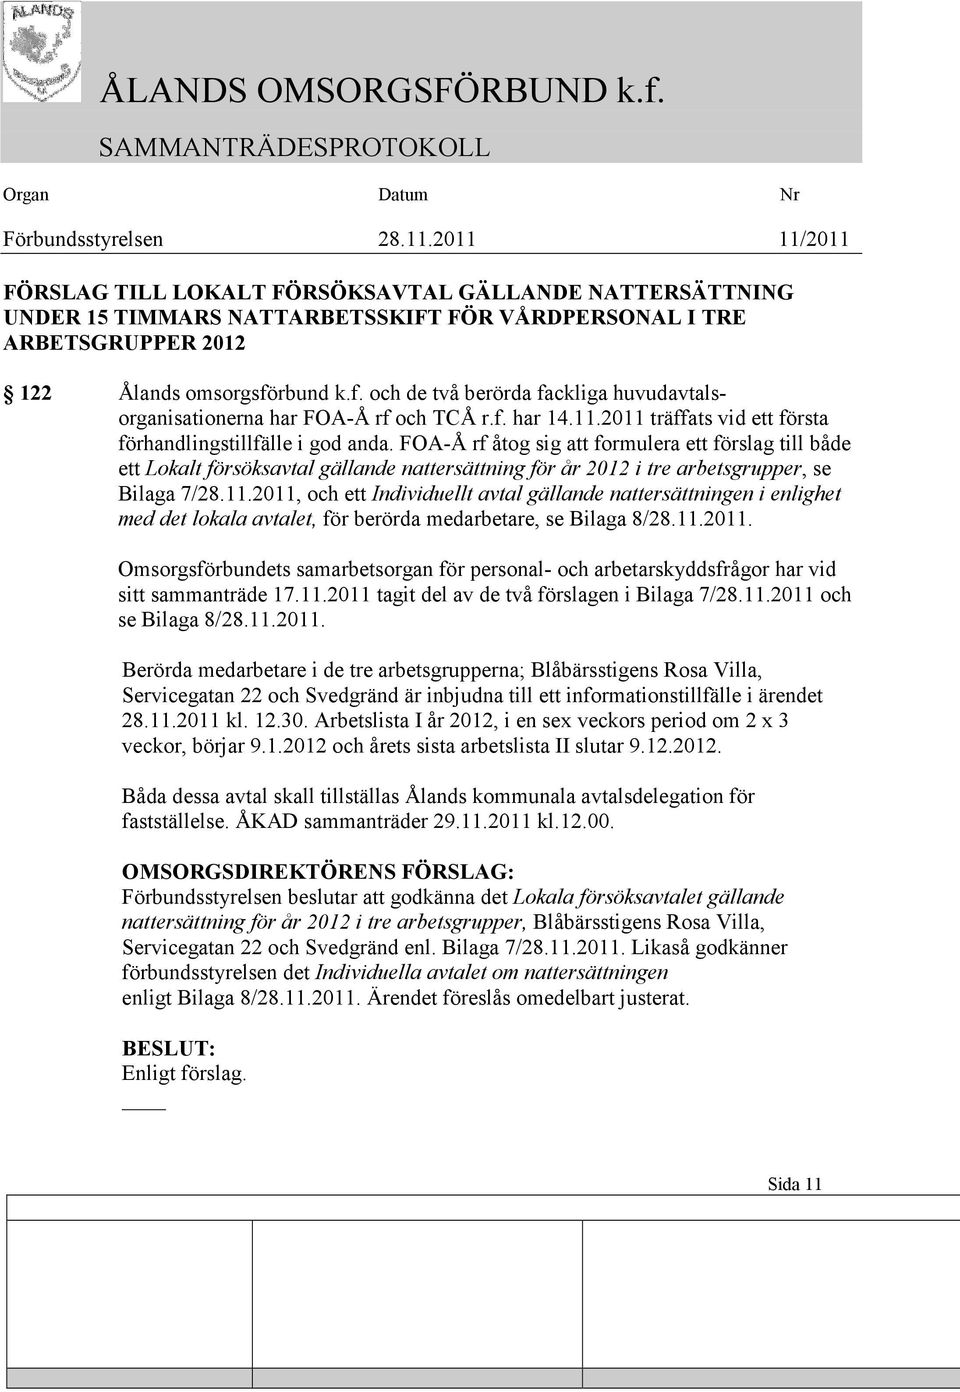 FOA-Å rf åtog sig att formulera ett förslag till både ett Lokalt försöksavtal gällande nattersättning för år 2012 i tre arbetsgrupper, se Bilaga 7/28.11.